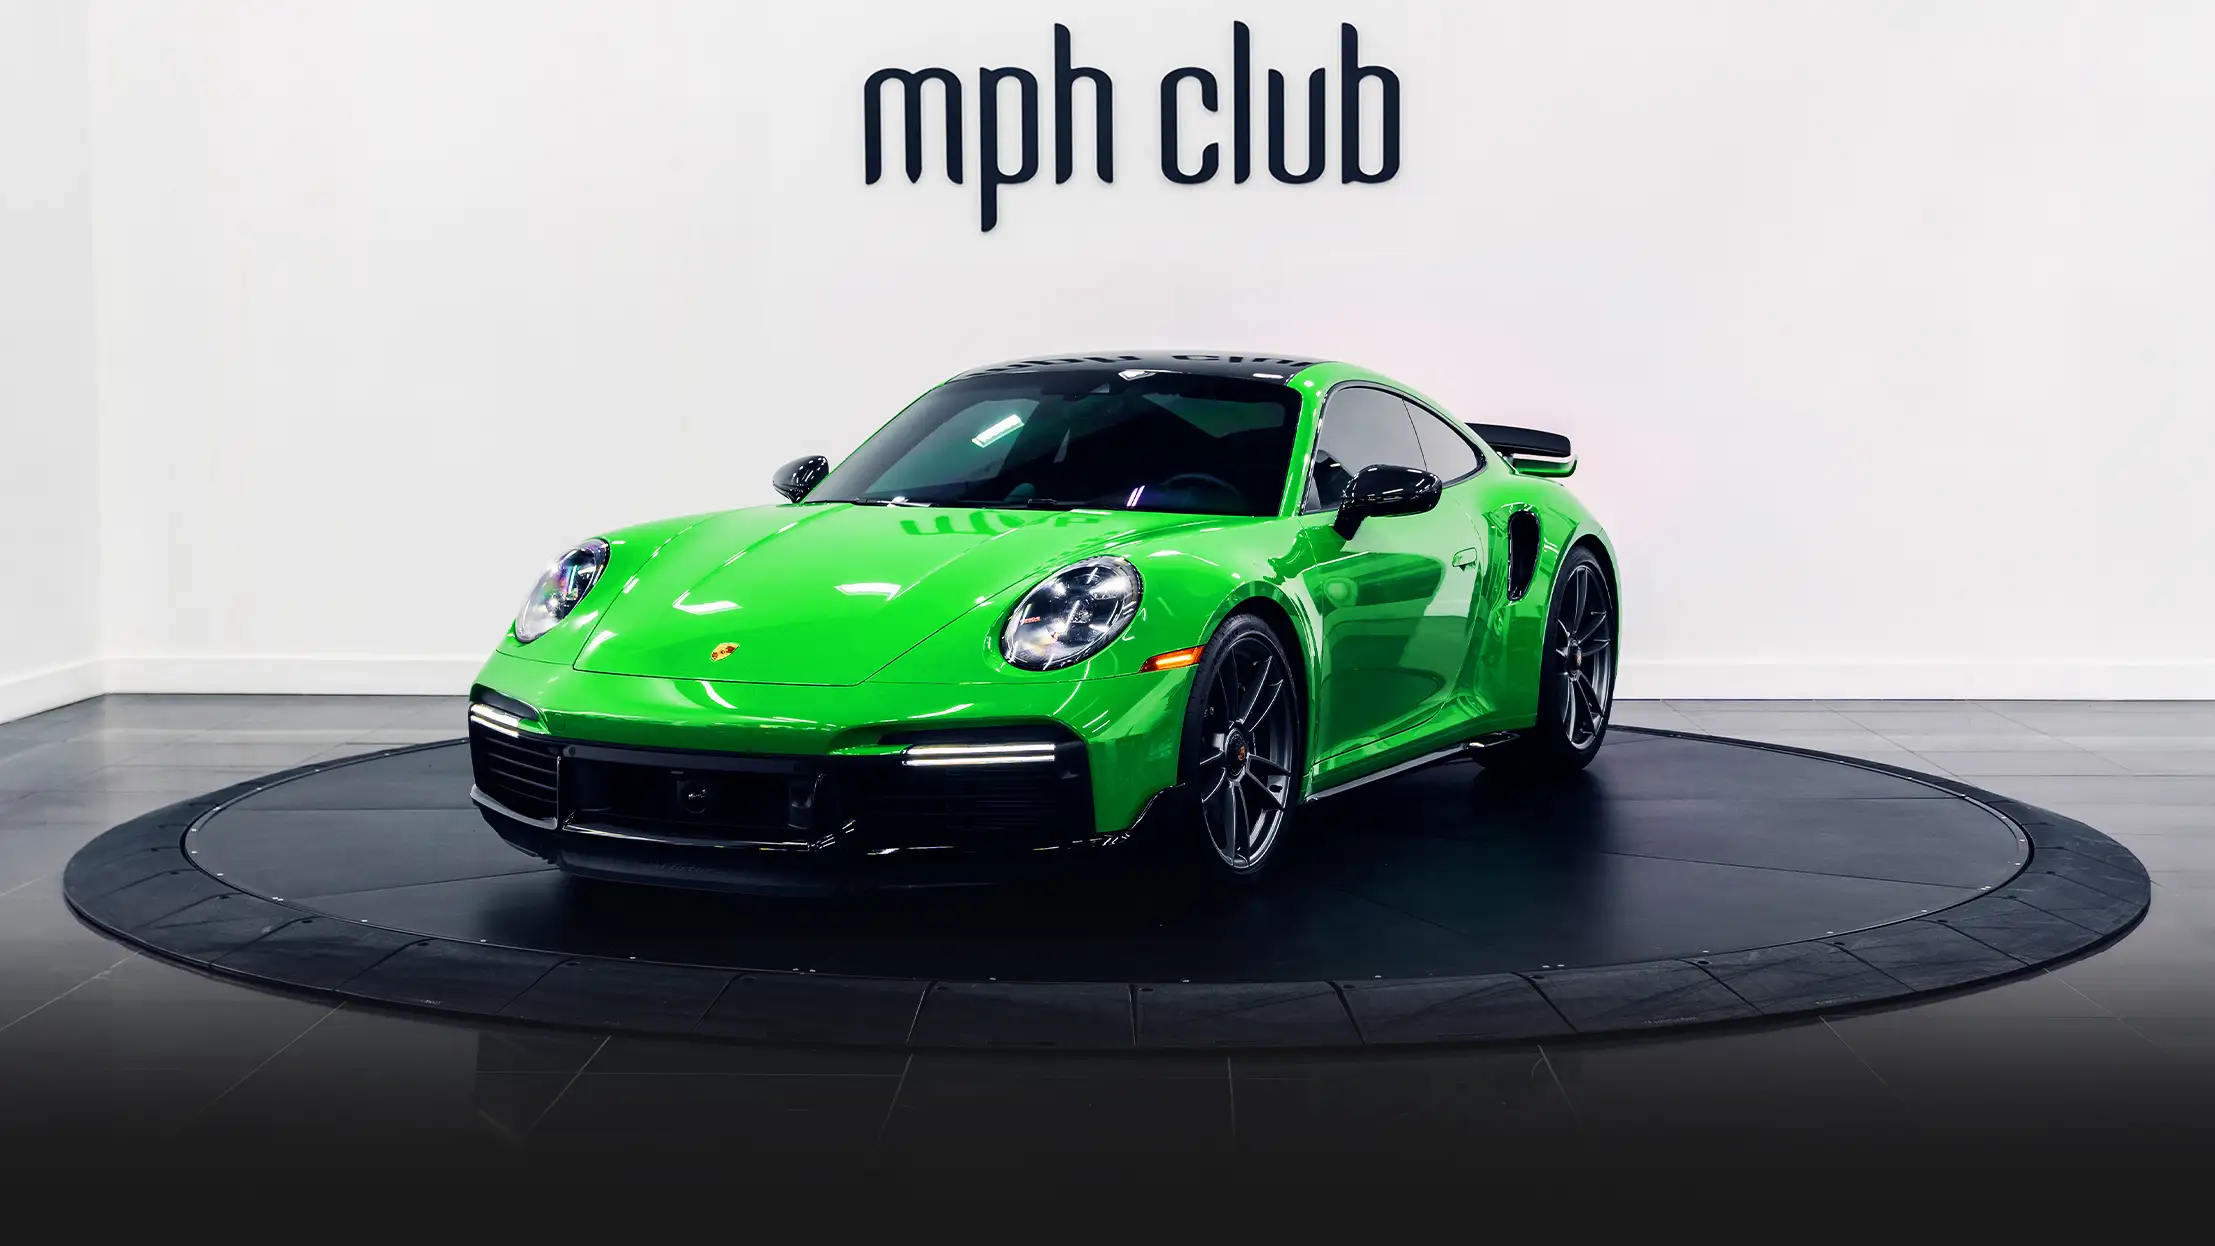 Green Porsche 911 Turbo S profile view - mph club